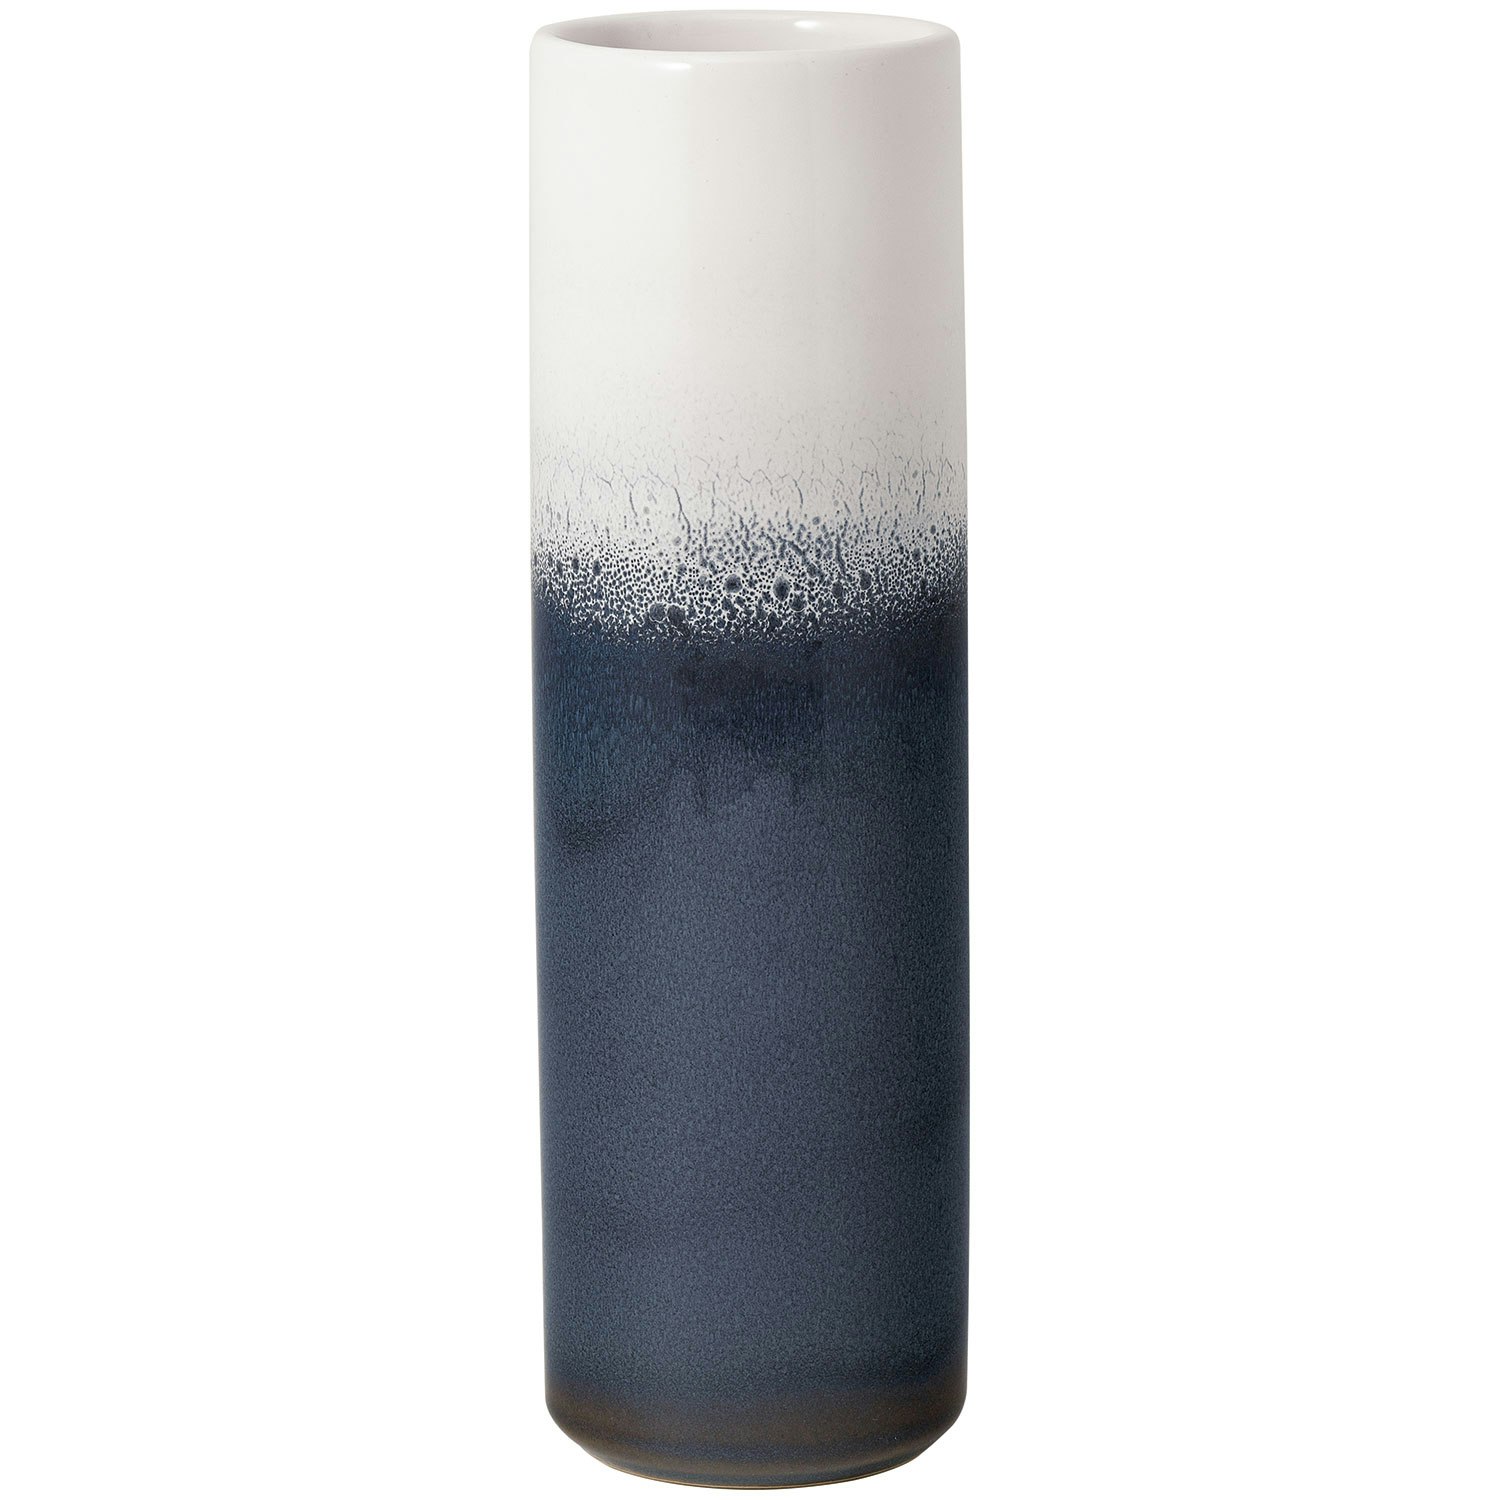 Villeroy & Boch Lave Home Cylinder Vas 7,5x25 Cm - Vaser Lergods Blå